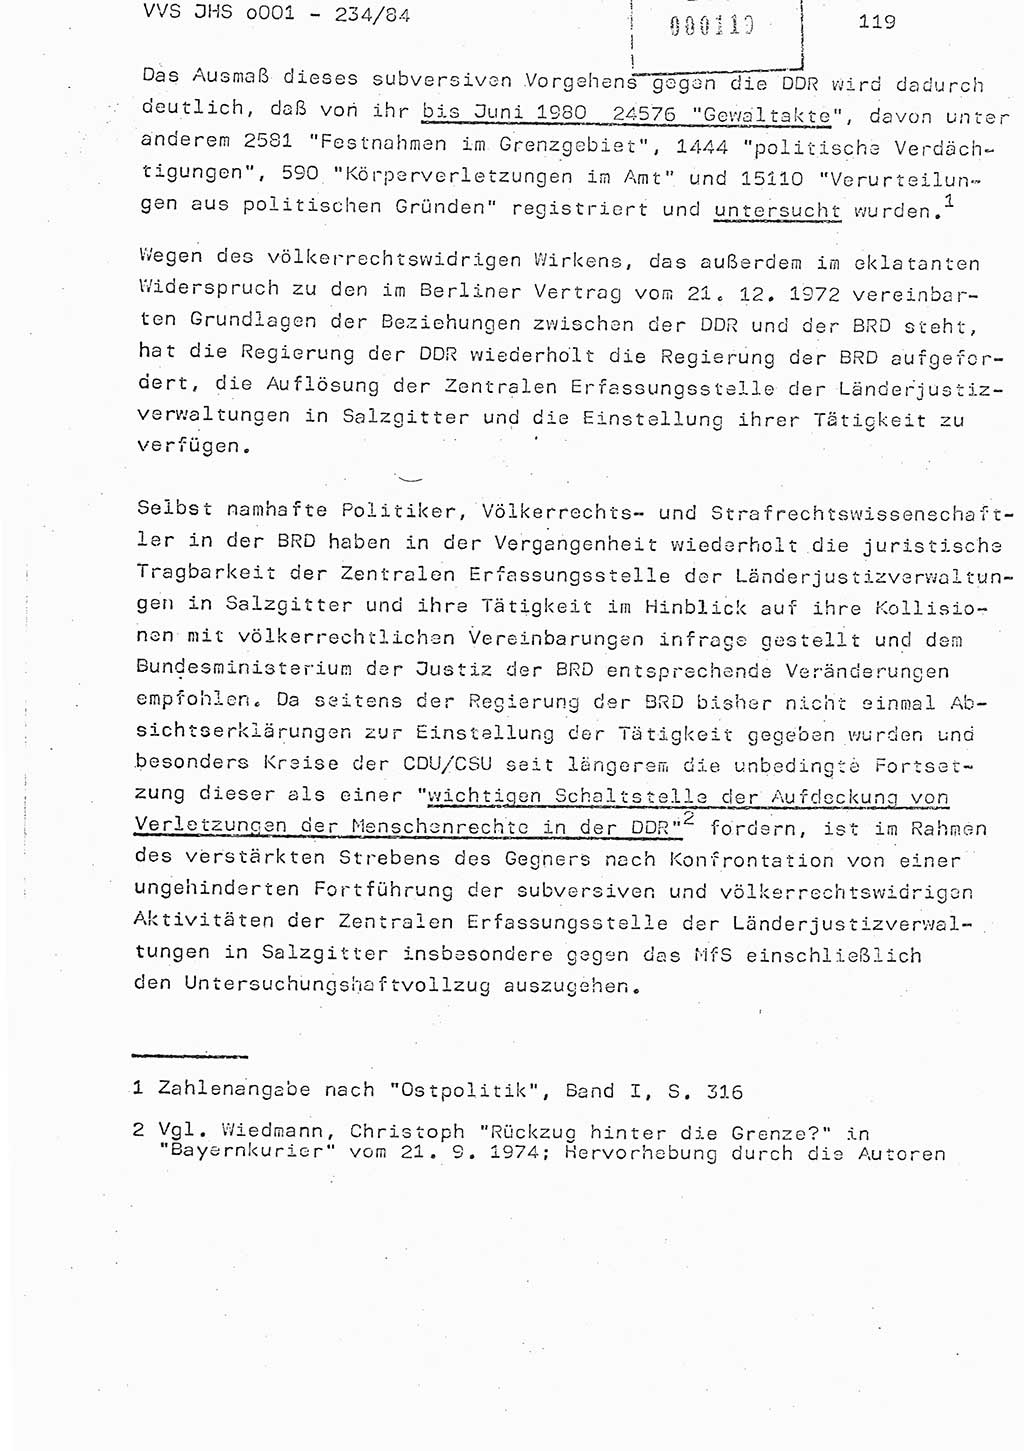 Dissertation Oberst Siegfried Rataizick (Abt. ⅩⅣ), Oberstleutnant Volkmar Heinz (Abt. ⅩⅣ), Oberstleutnant Werner Stein (HA Ⅸ), Hauptmann Heinz Conrad (JHS), Ministerium für Staatssicherheit (MfS) [Deutsche Demokratische Republik (DDR)], Juristische Hochschule (JHS), Vertrauliche Verschlußsache (VVS) o001-234/84, Potsdam 1984, Seite 119 (Diss. MfS DDR JHS VVS o001-234/84 1984, S. 119)